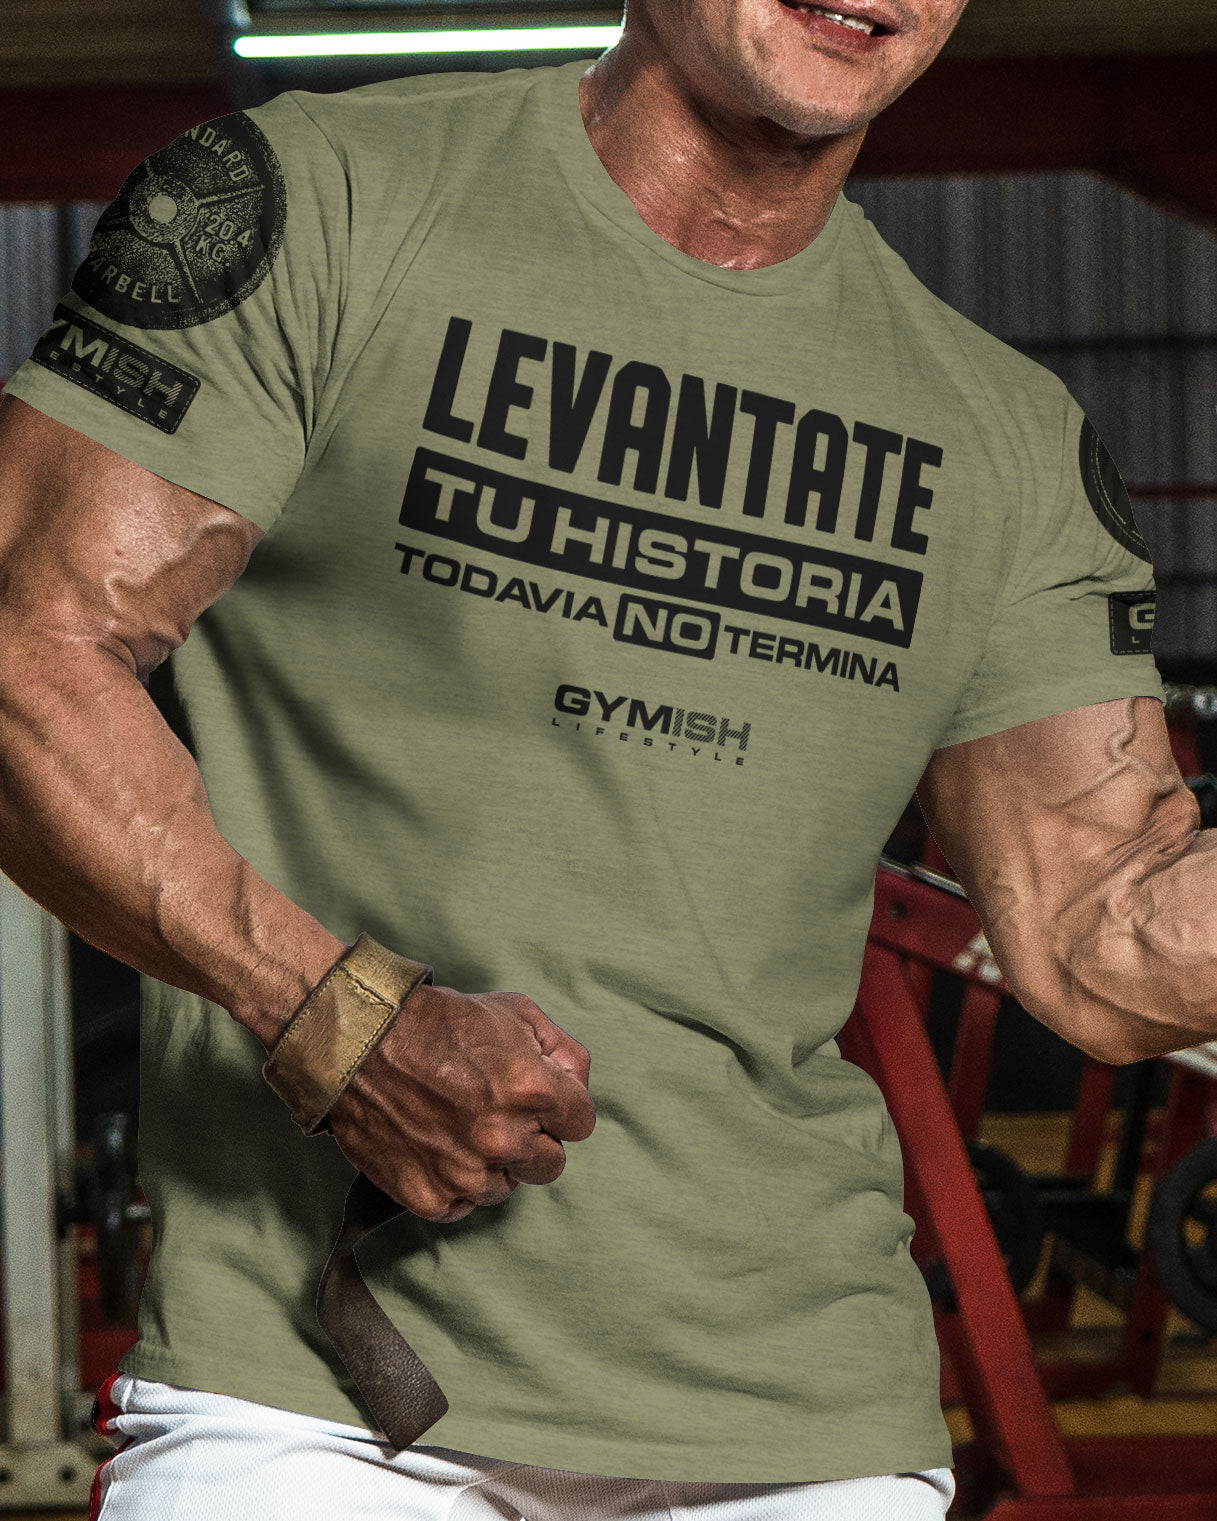 Levantate Tu historia Todavia no termin Workout Gym T-Shirt Funny Gym Shirt for Men Camiseta de gimnasio de entrenamiento